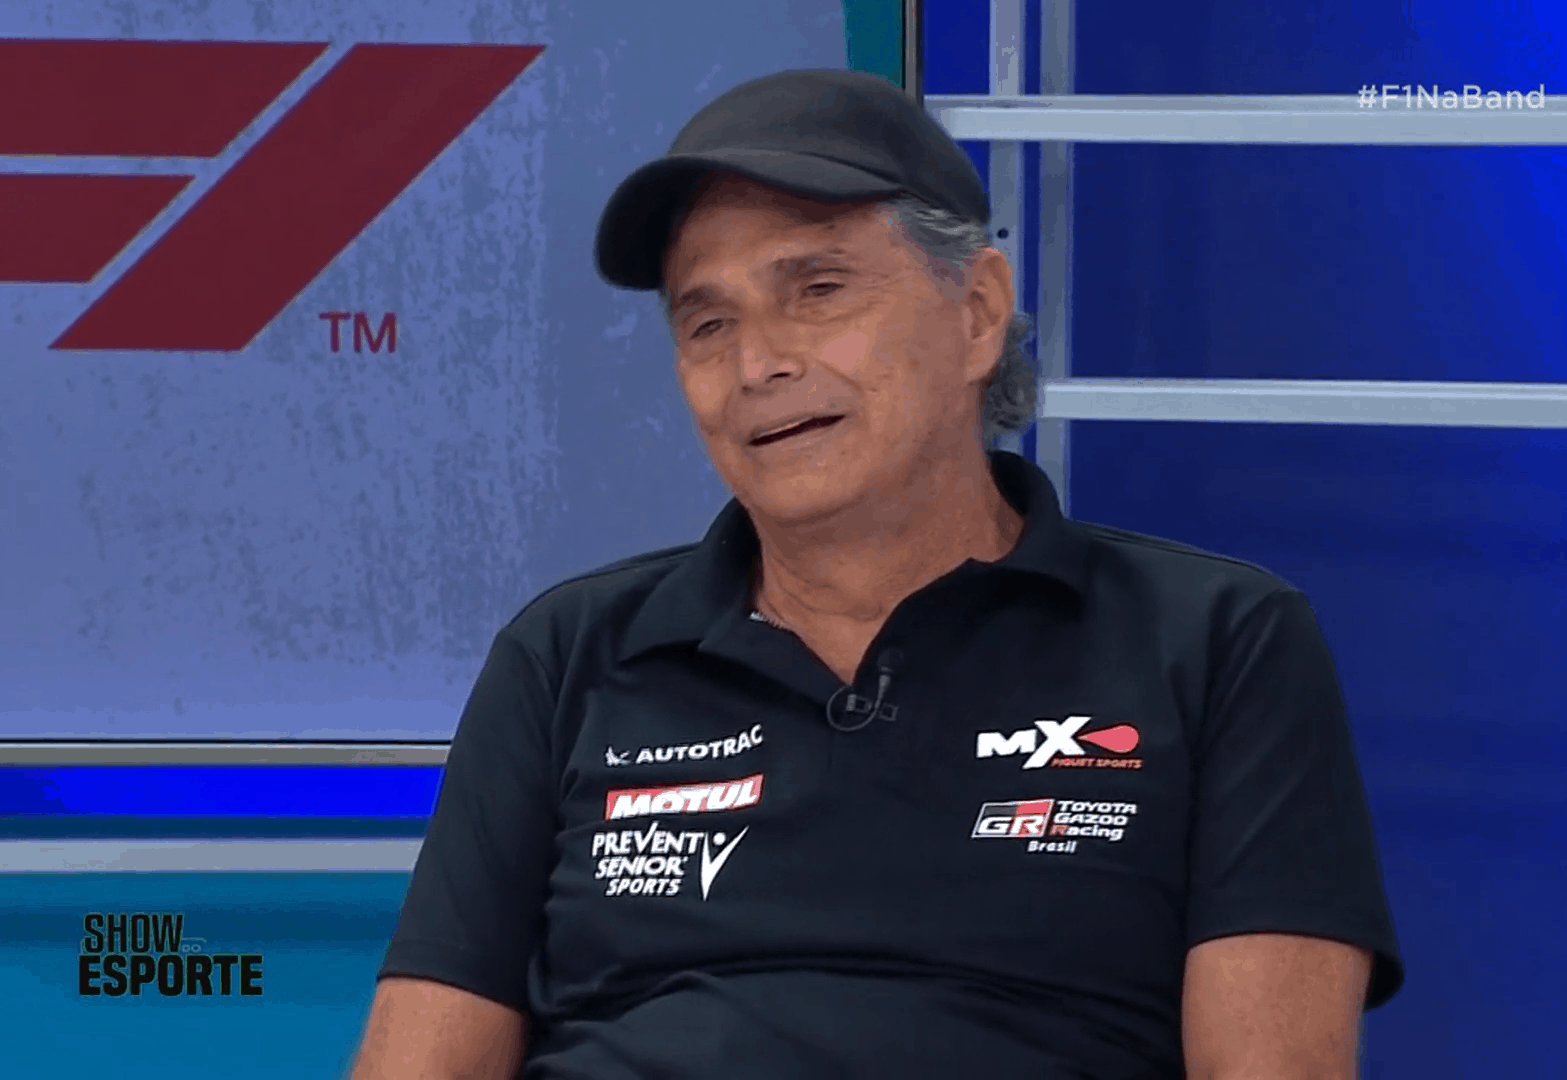 Piquet repete fala racista e pratica homofobia contra Lewis Hamilton em novo vídeo